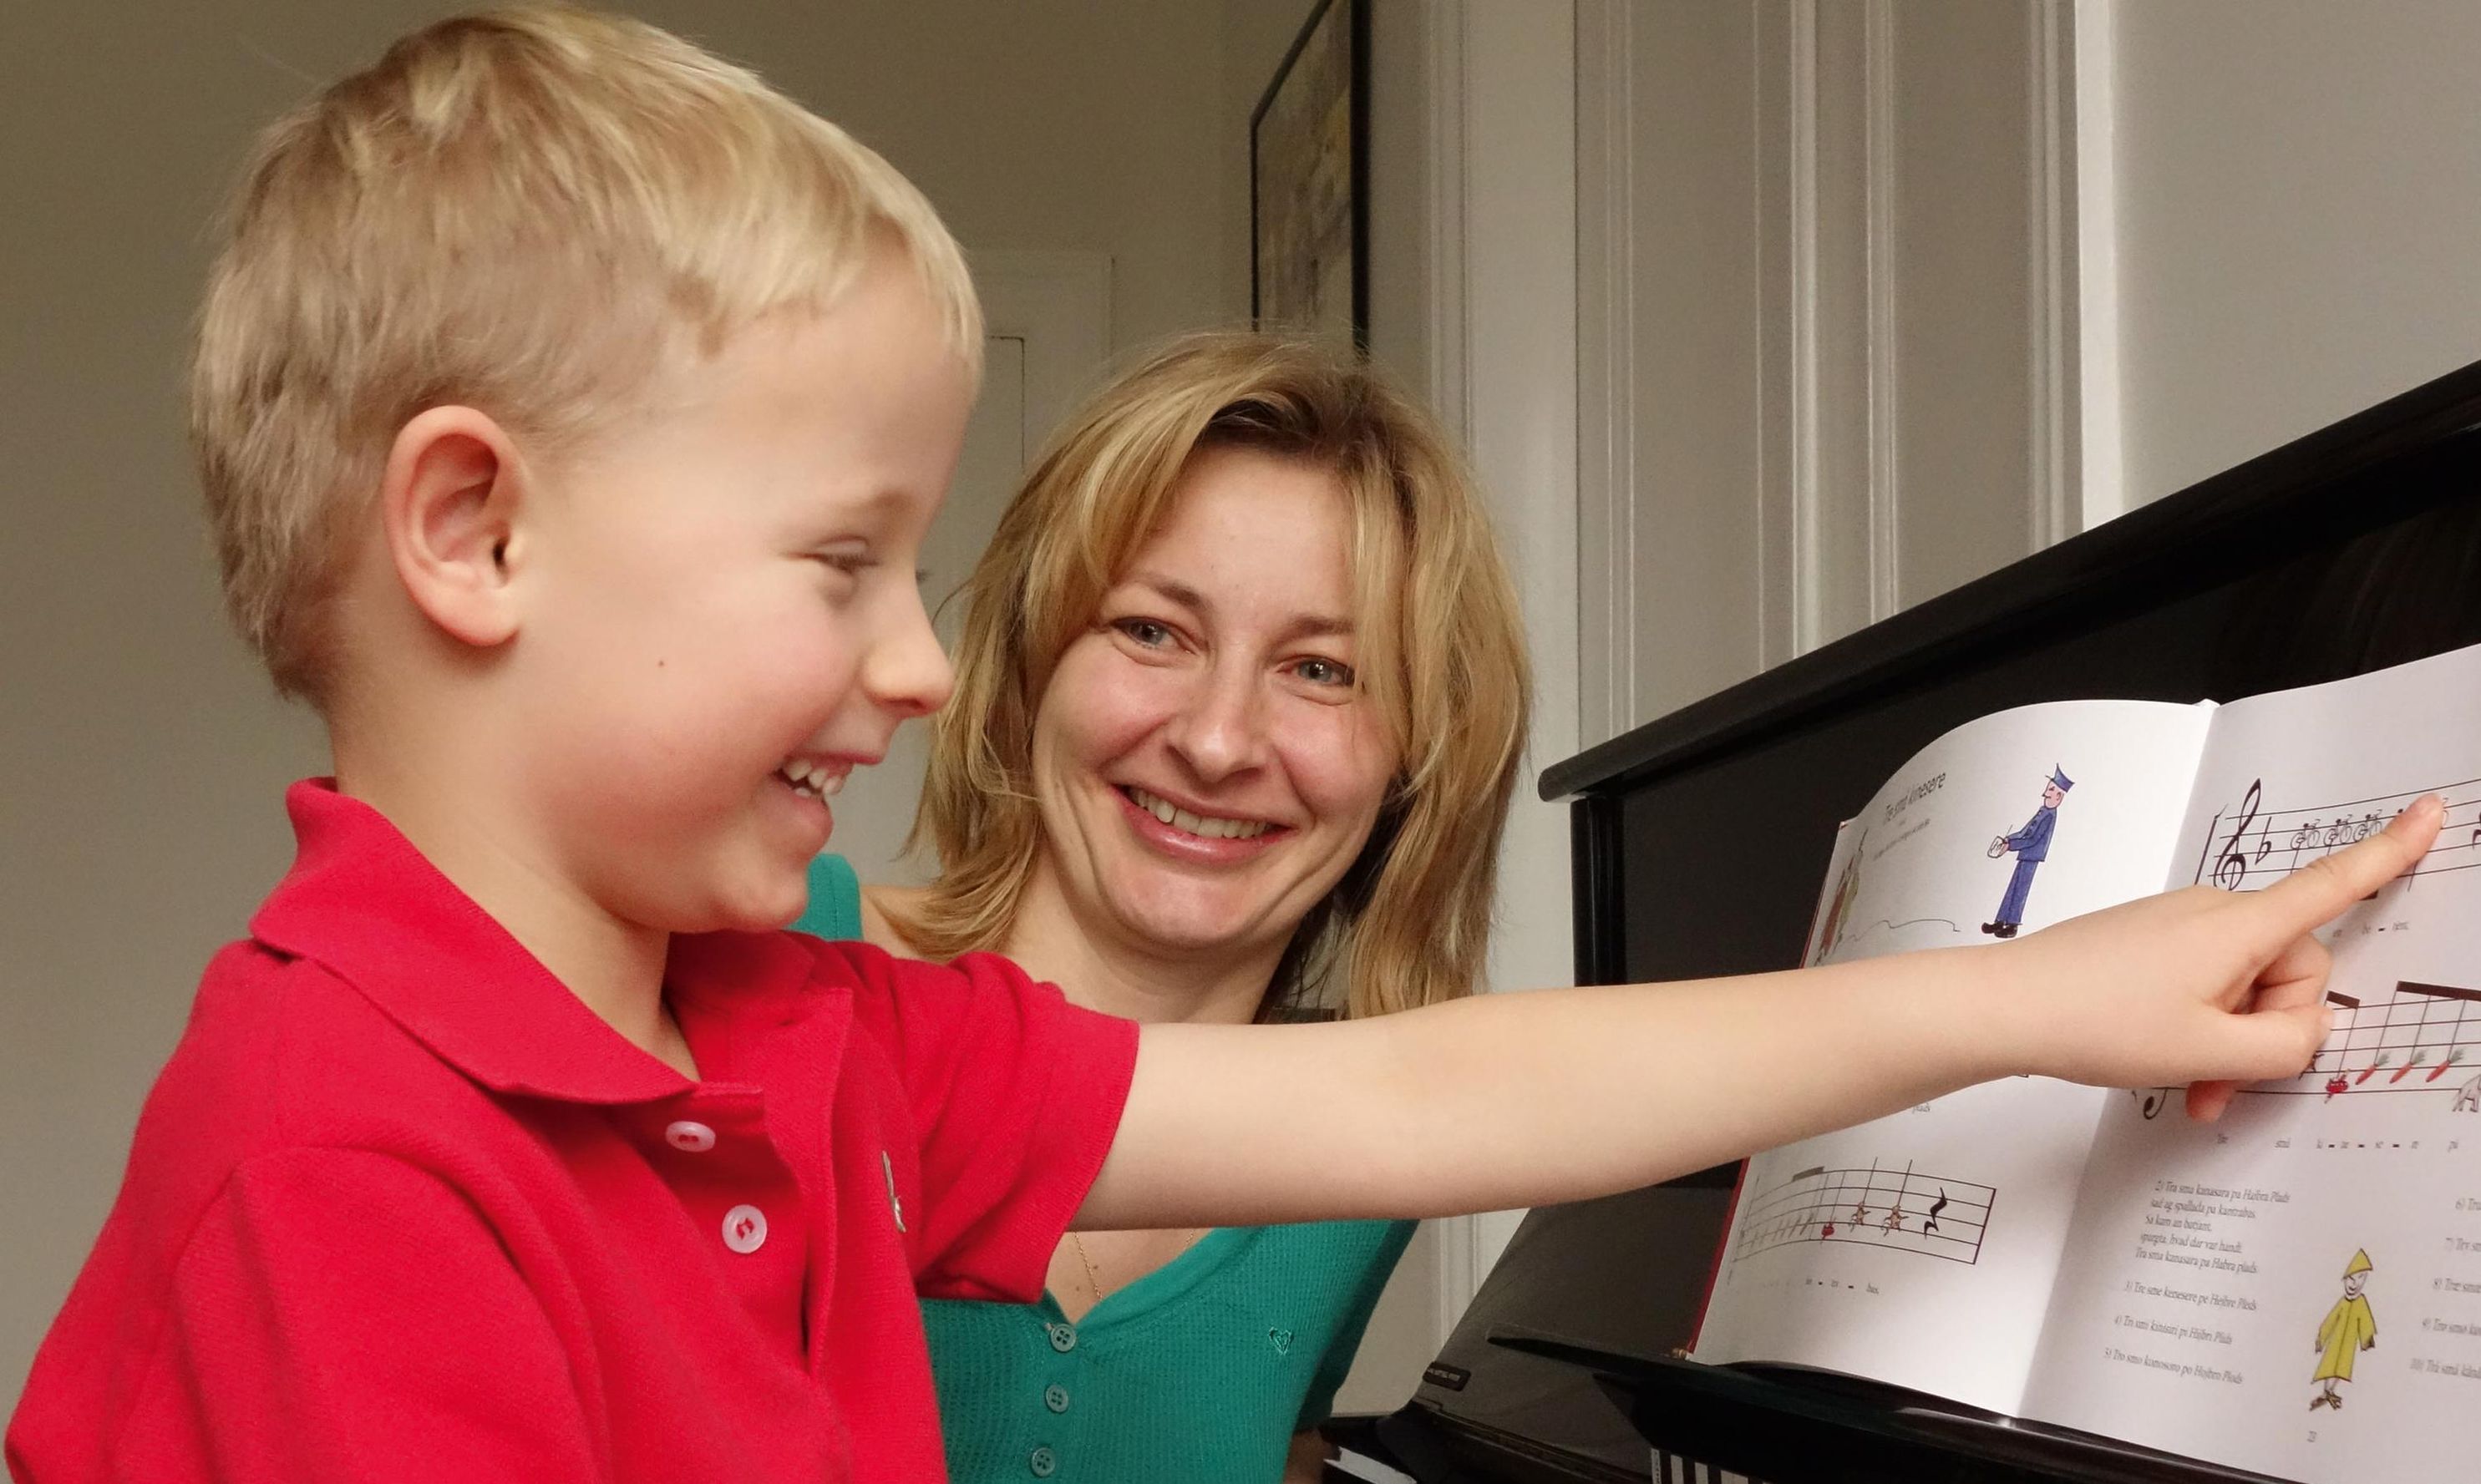 Klavierspiel & Spass - Klavier lernen für Kinder kaufen